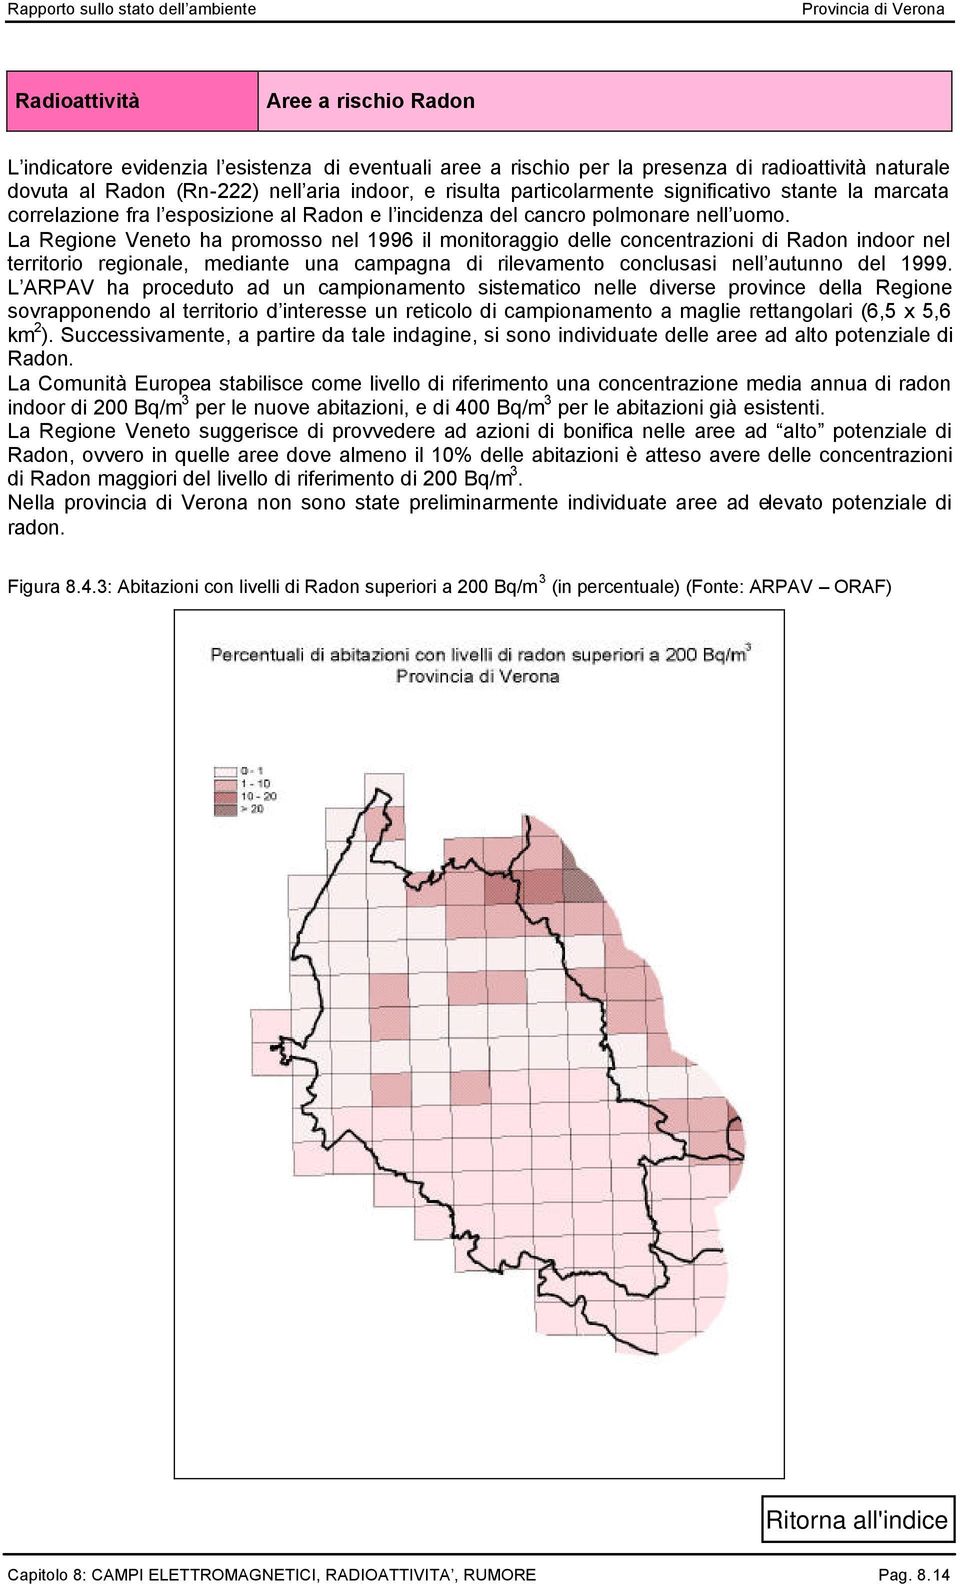 La Regione Veneto ha promosso nel 1996 il monitoraggio delle concentrazioni di Radon indoor nel territorio regionale, mediante una campagna di rilevamento conclusasi nell autunno del 1999.